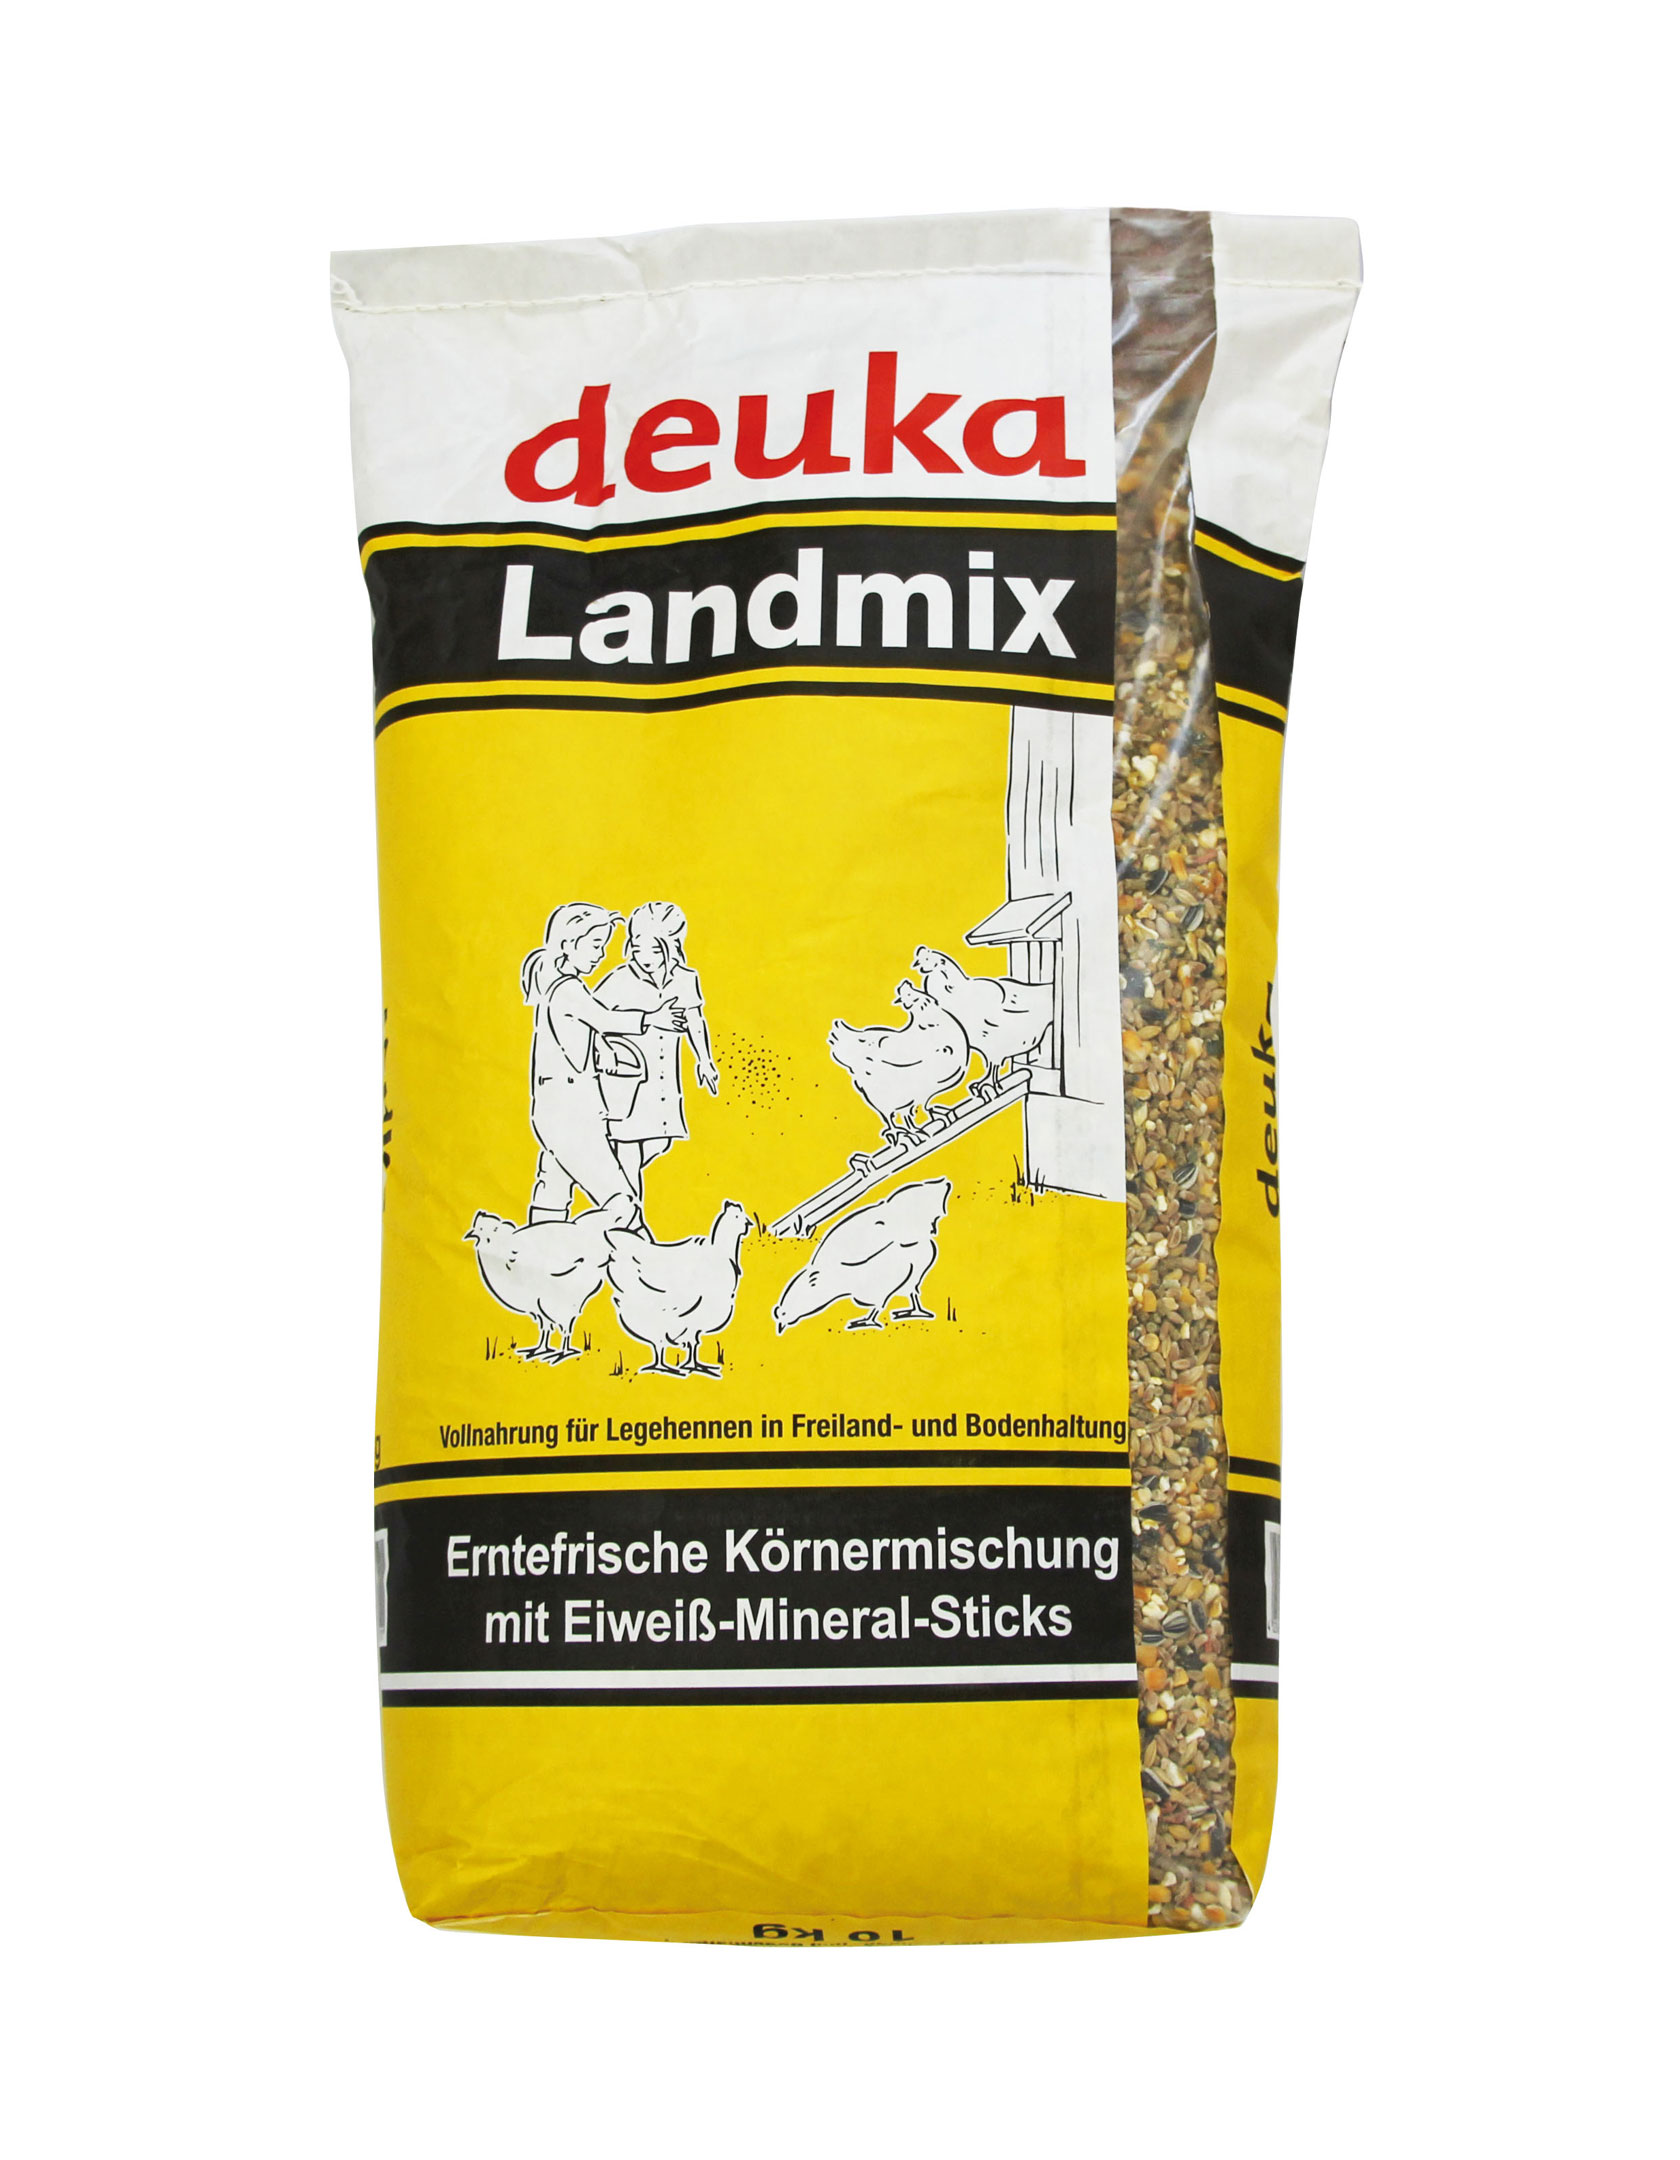 DEUKA Landmix 10 kg - Vollnahrung für Legehennen